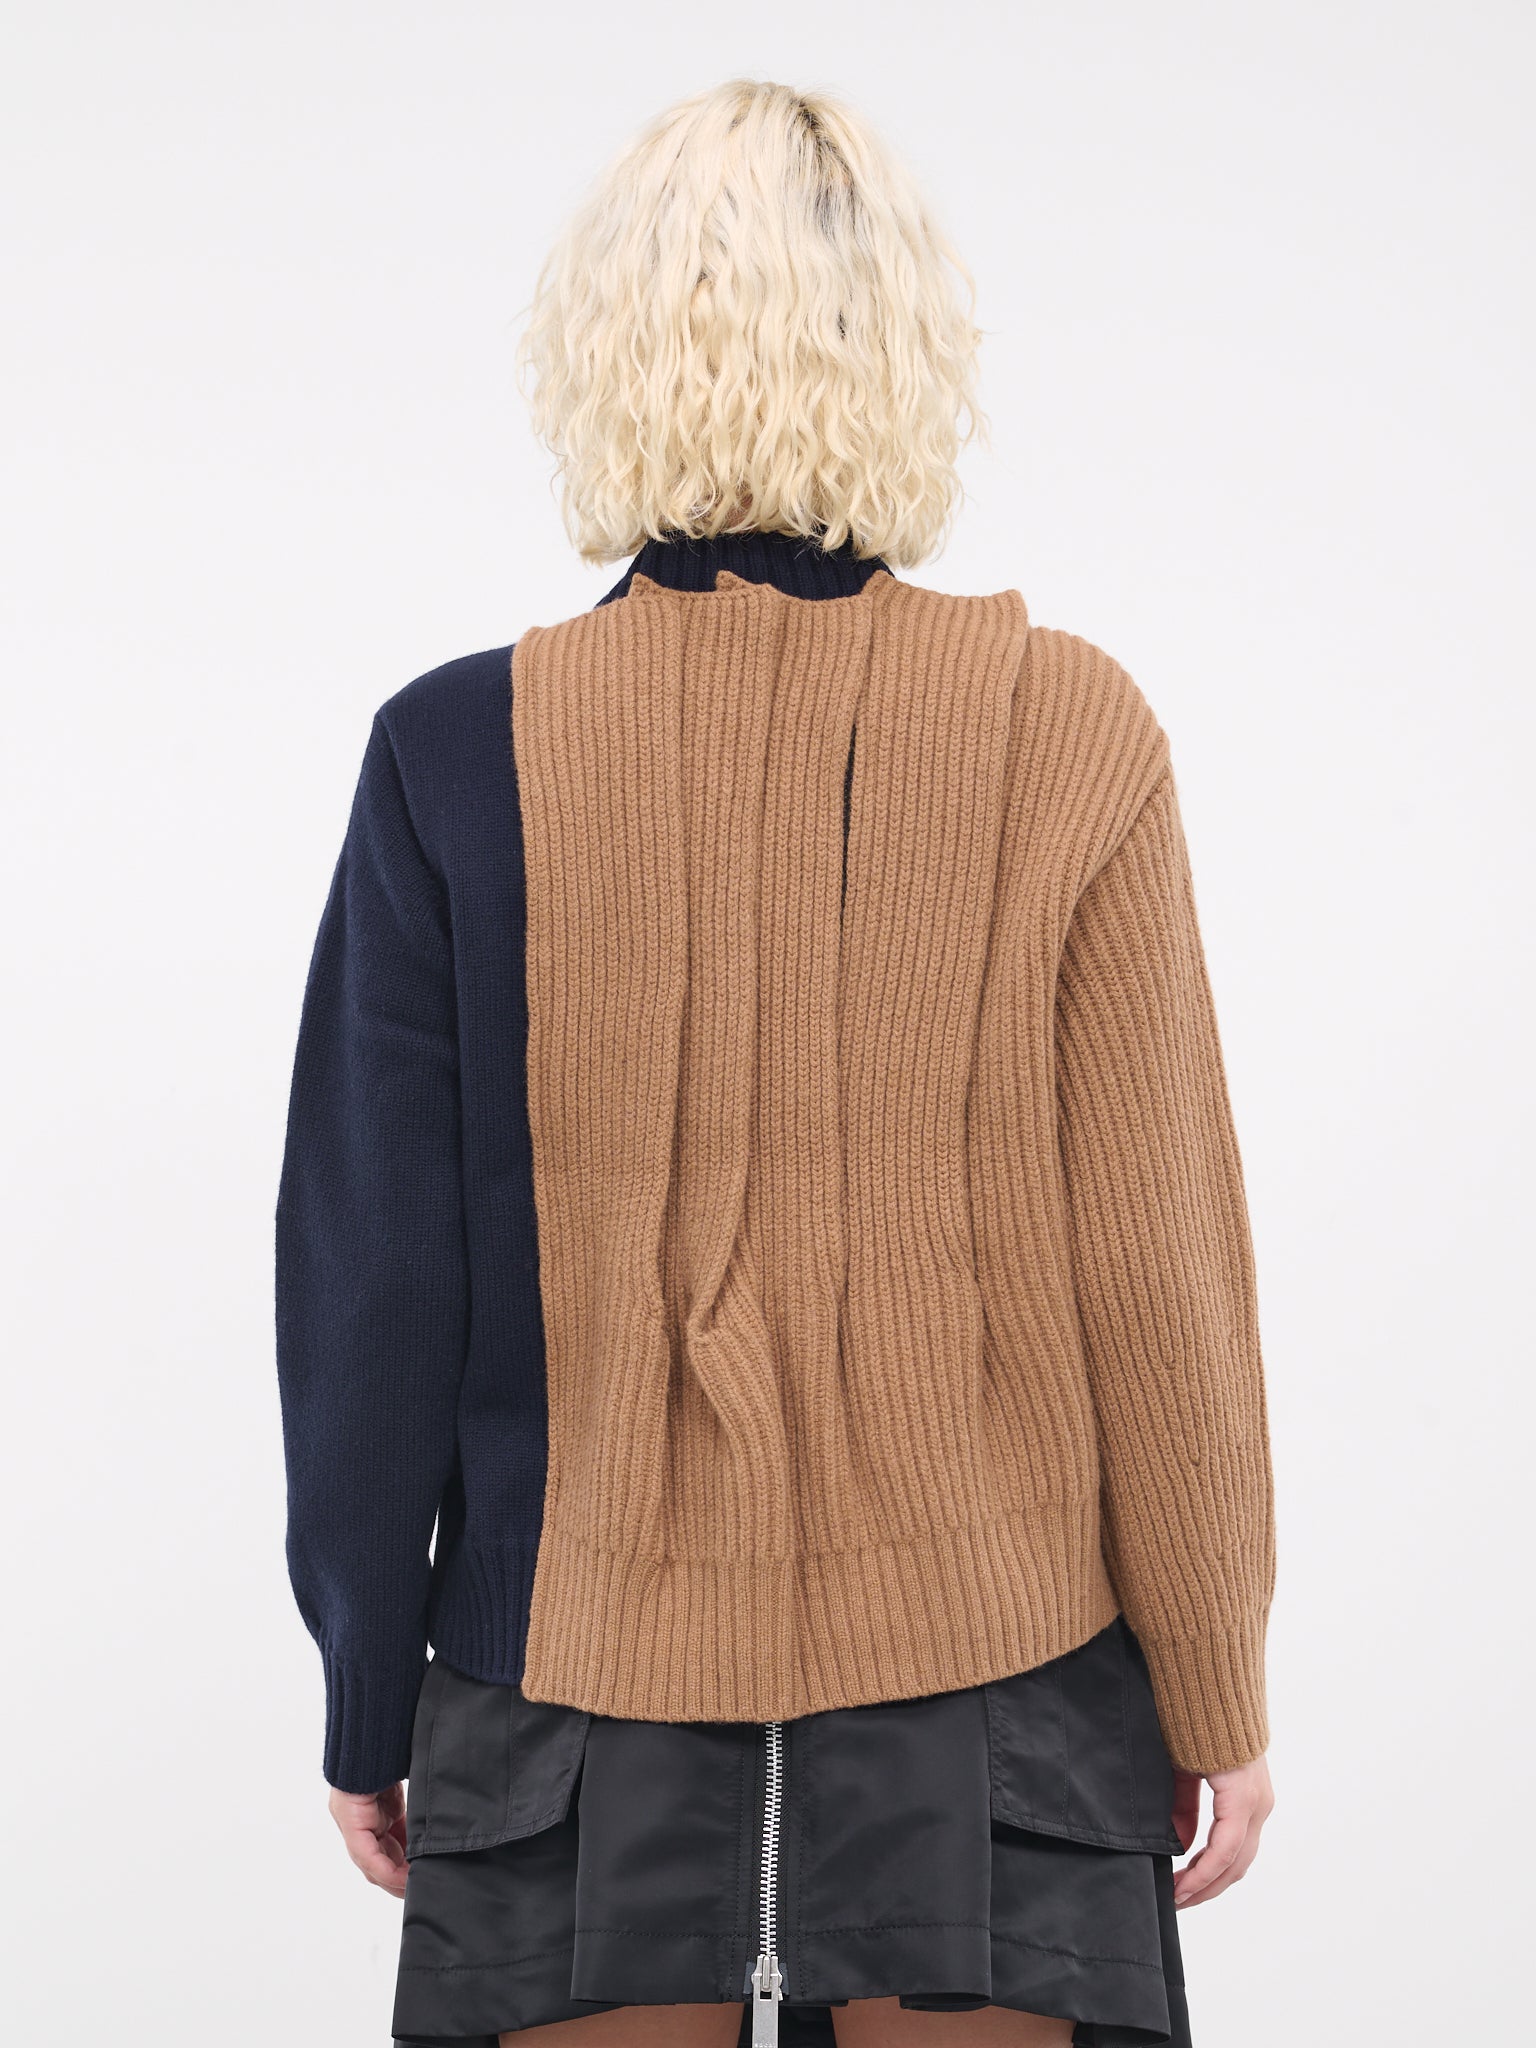 Wool Knit Blouson (06959-662-BEIGE-NAVY)